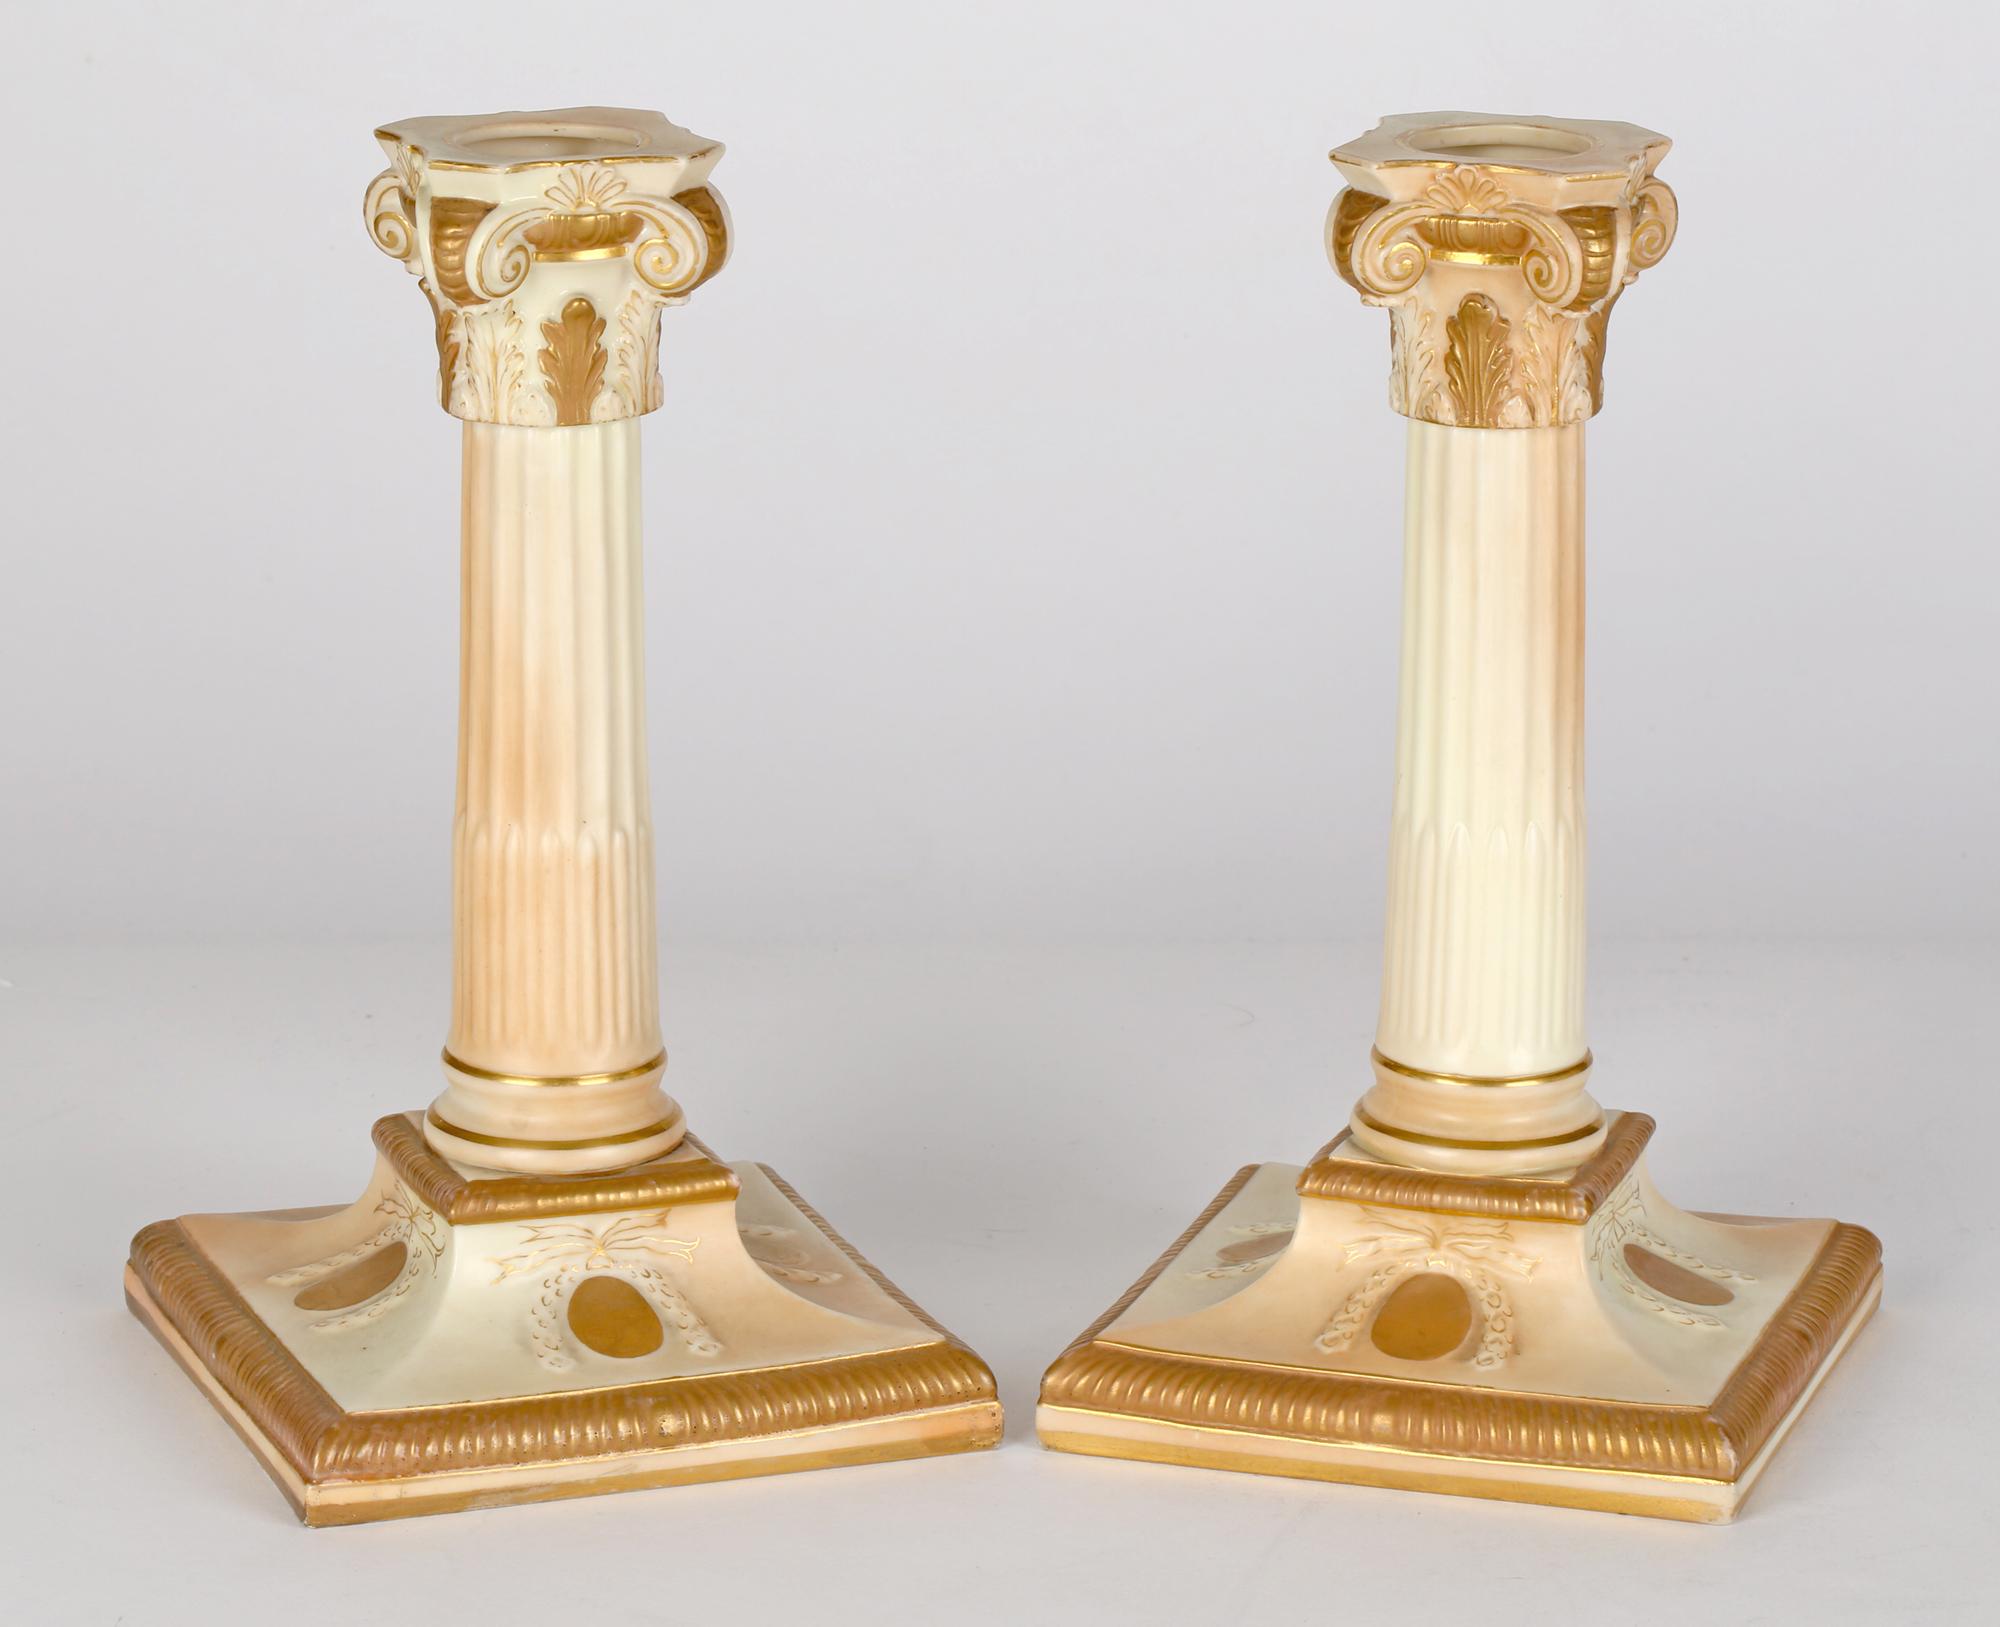 Une très belle paire de chandeliers à colonne en porcelaine classique de Royal Worcester, décorés de glaçures ivoire blush, datés de 1892. Les chandeliers reposent sur une base piédestale carrée avec de hautes colonnes arrondies et moulurées avec